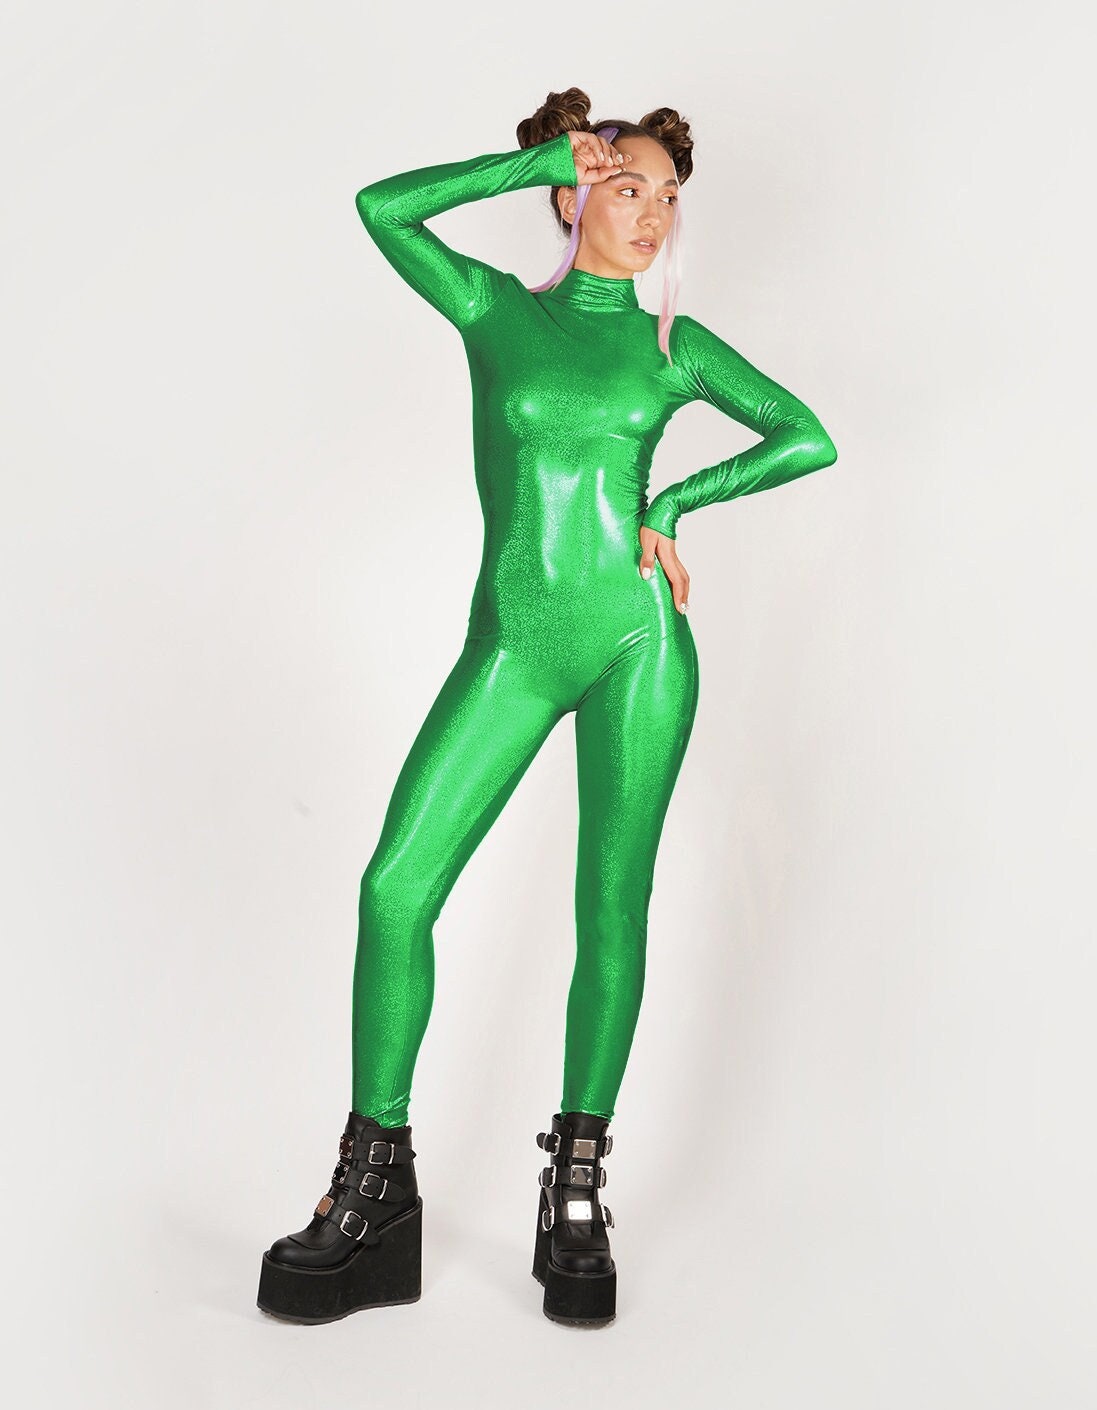 Hologram Iridescent Green Catsuit Spandex Jumpsuit Unitard Bodysuit  Mystique Metallic Festival Costume Size S M L XL 